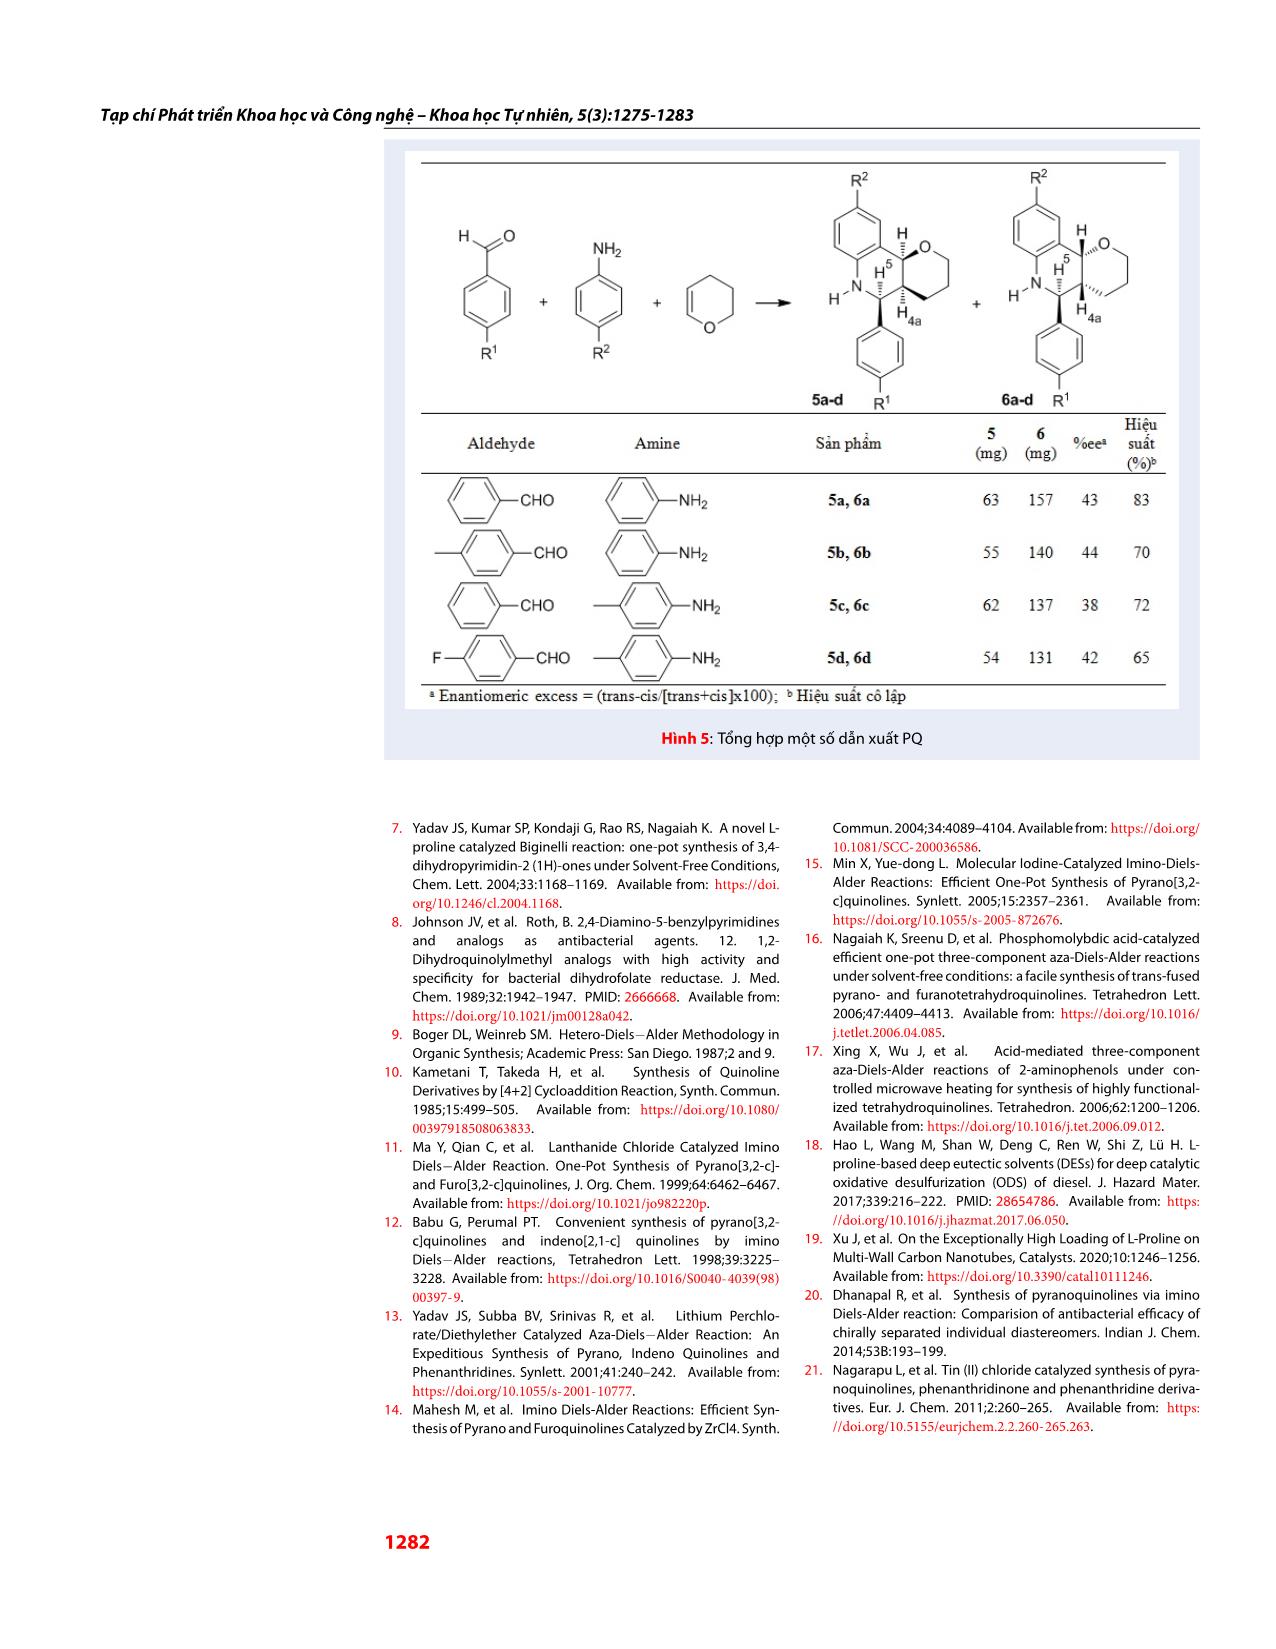 Tổng hợp dẫn xuất pyrano[3,2-C]quinoline dùng xúc tác điều chế từ L-proline và acid p-toluenesulfonic trang 8